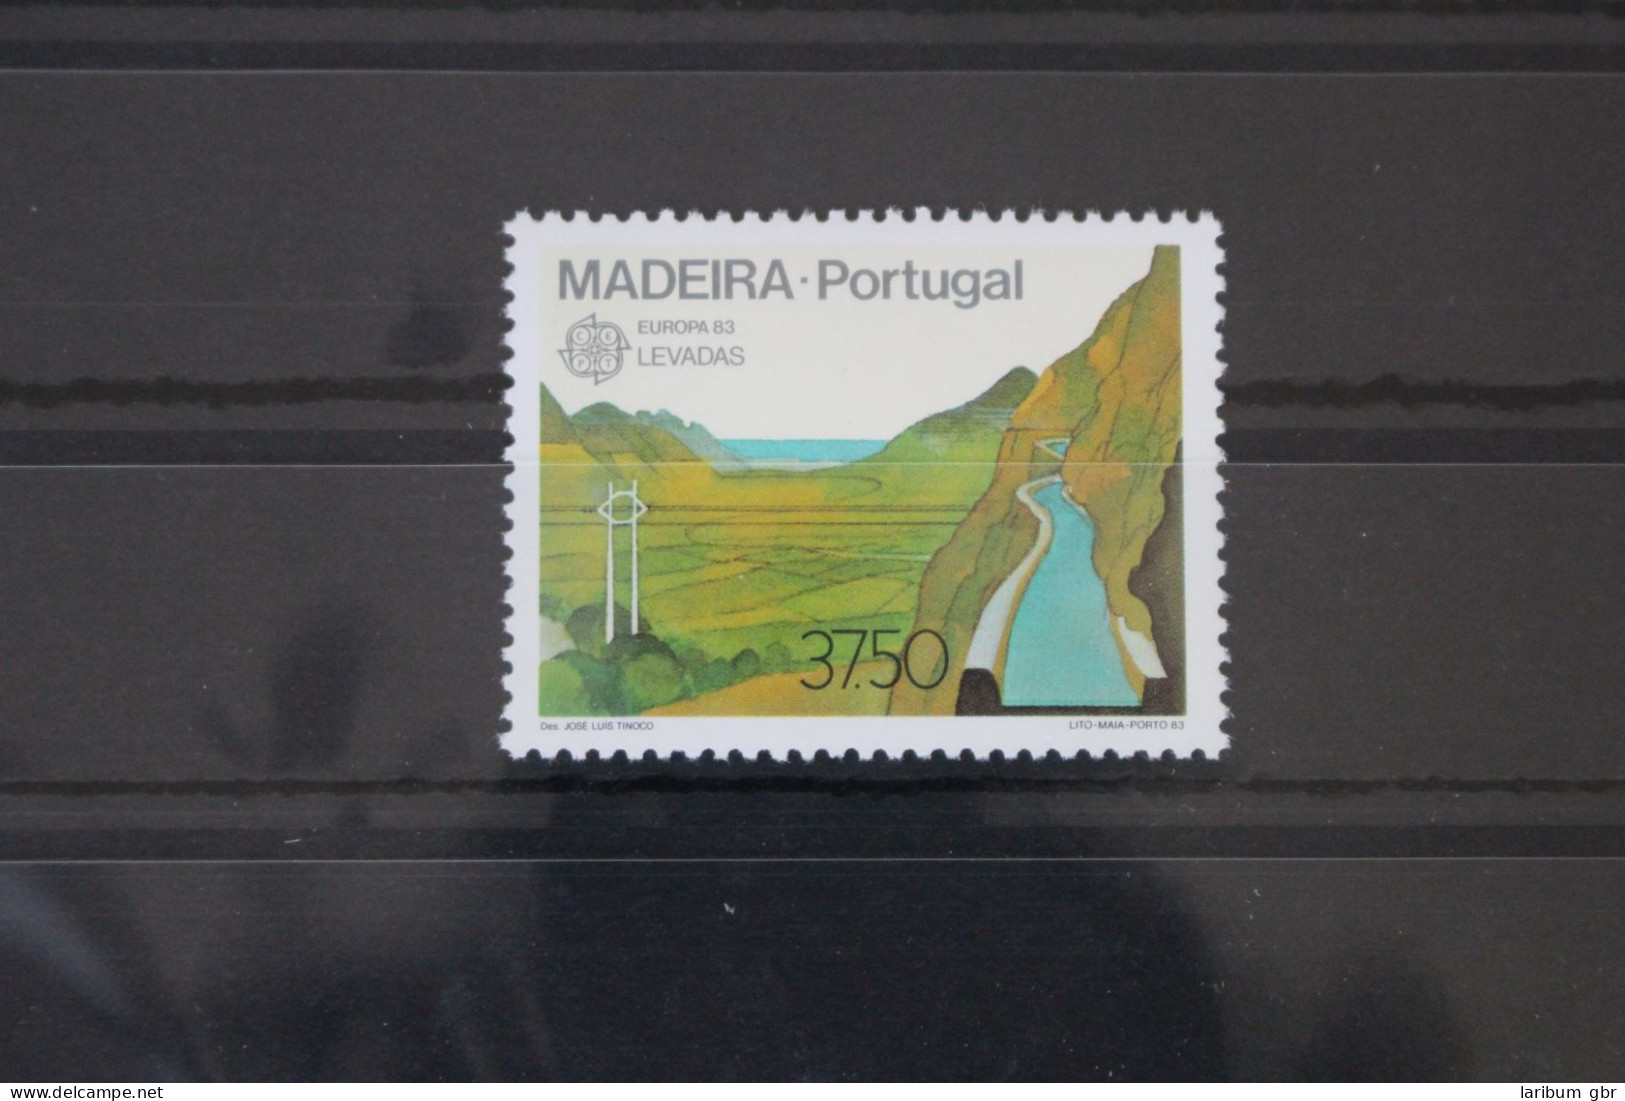 Portugal Madeira 84 Postfrisch Europa #WG128 - Madeira